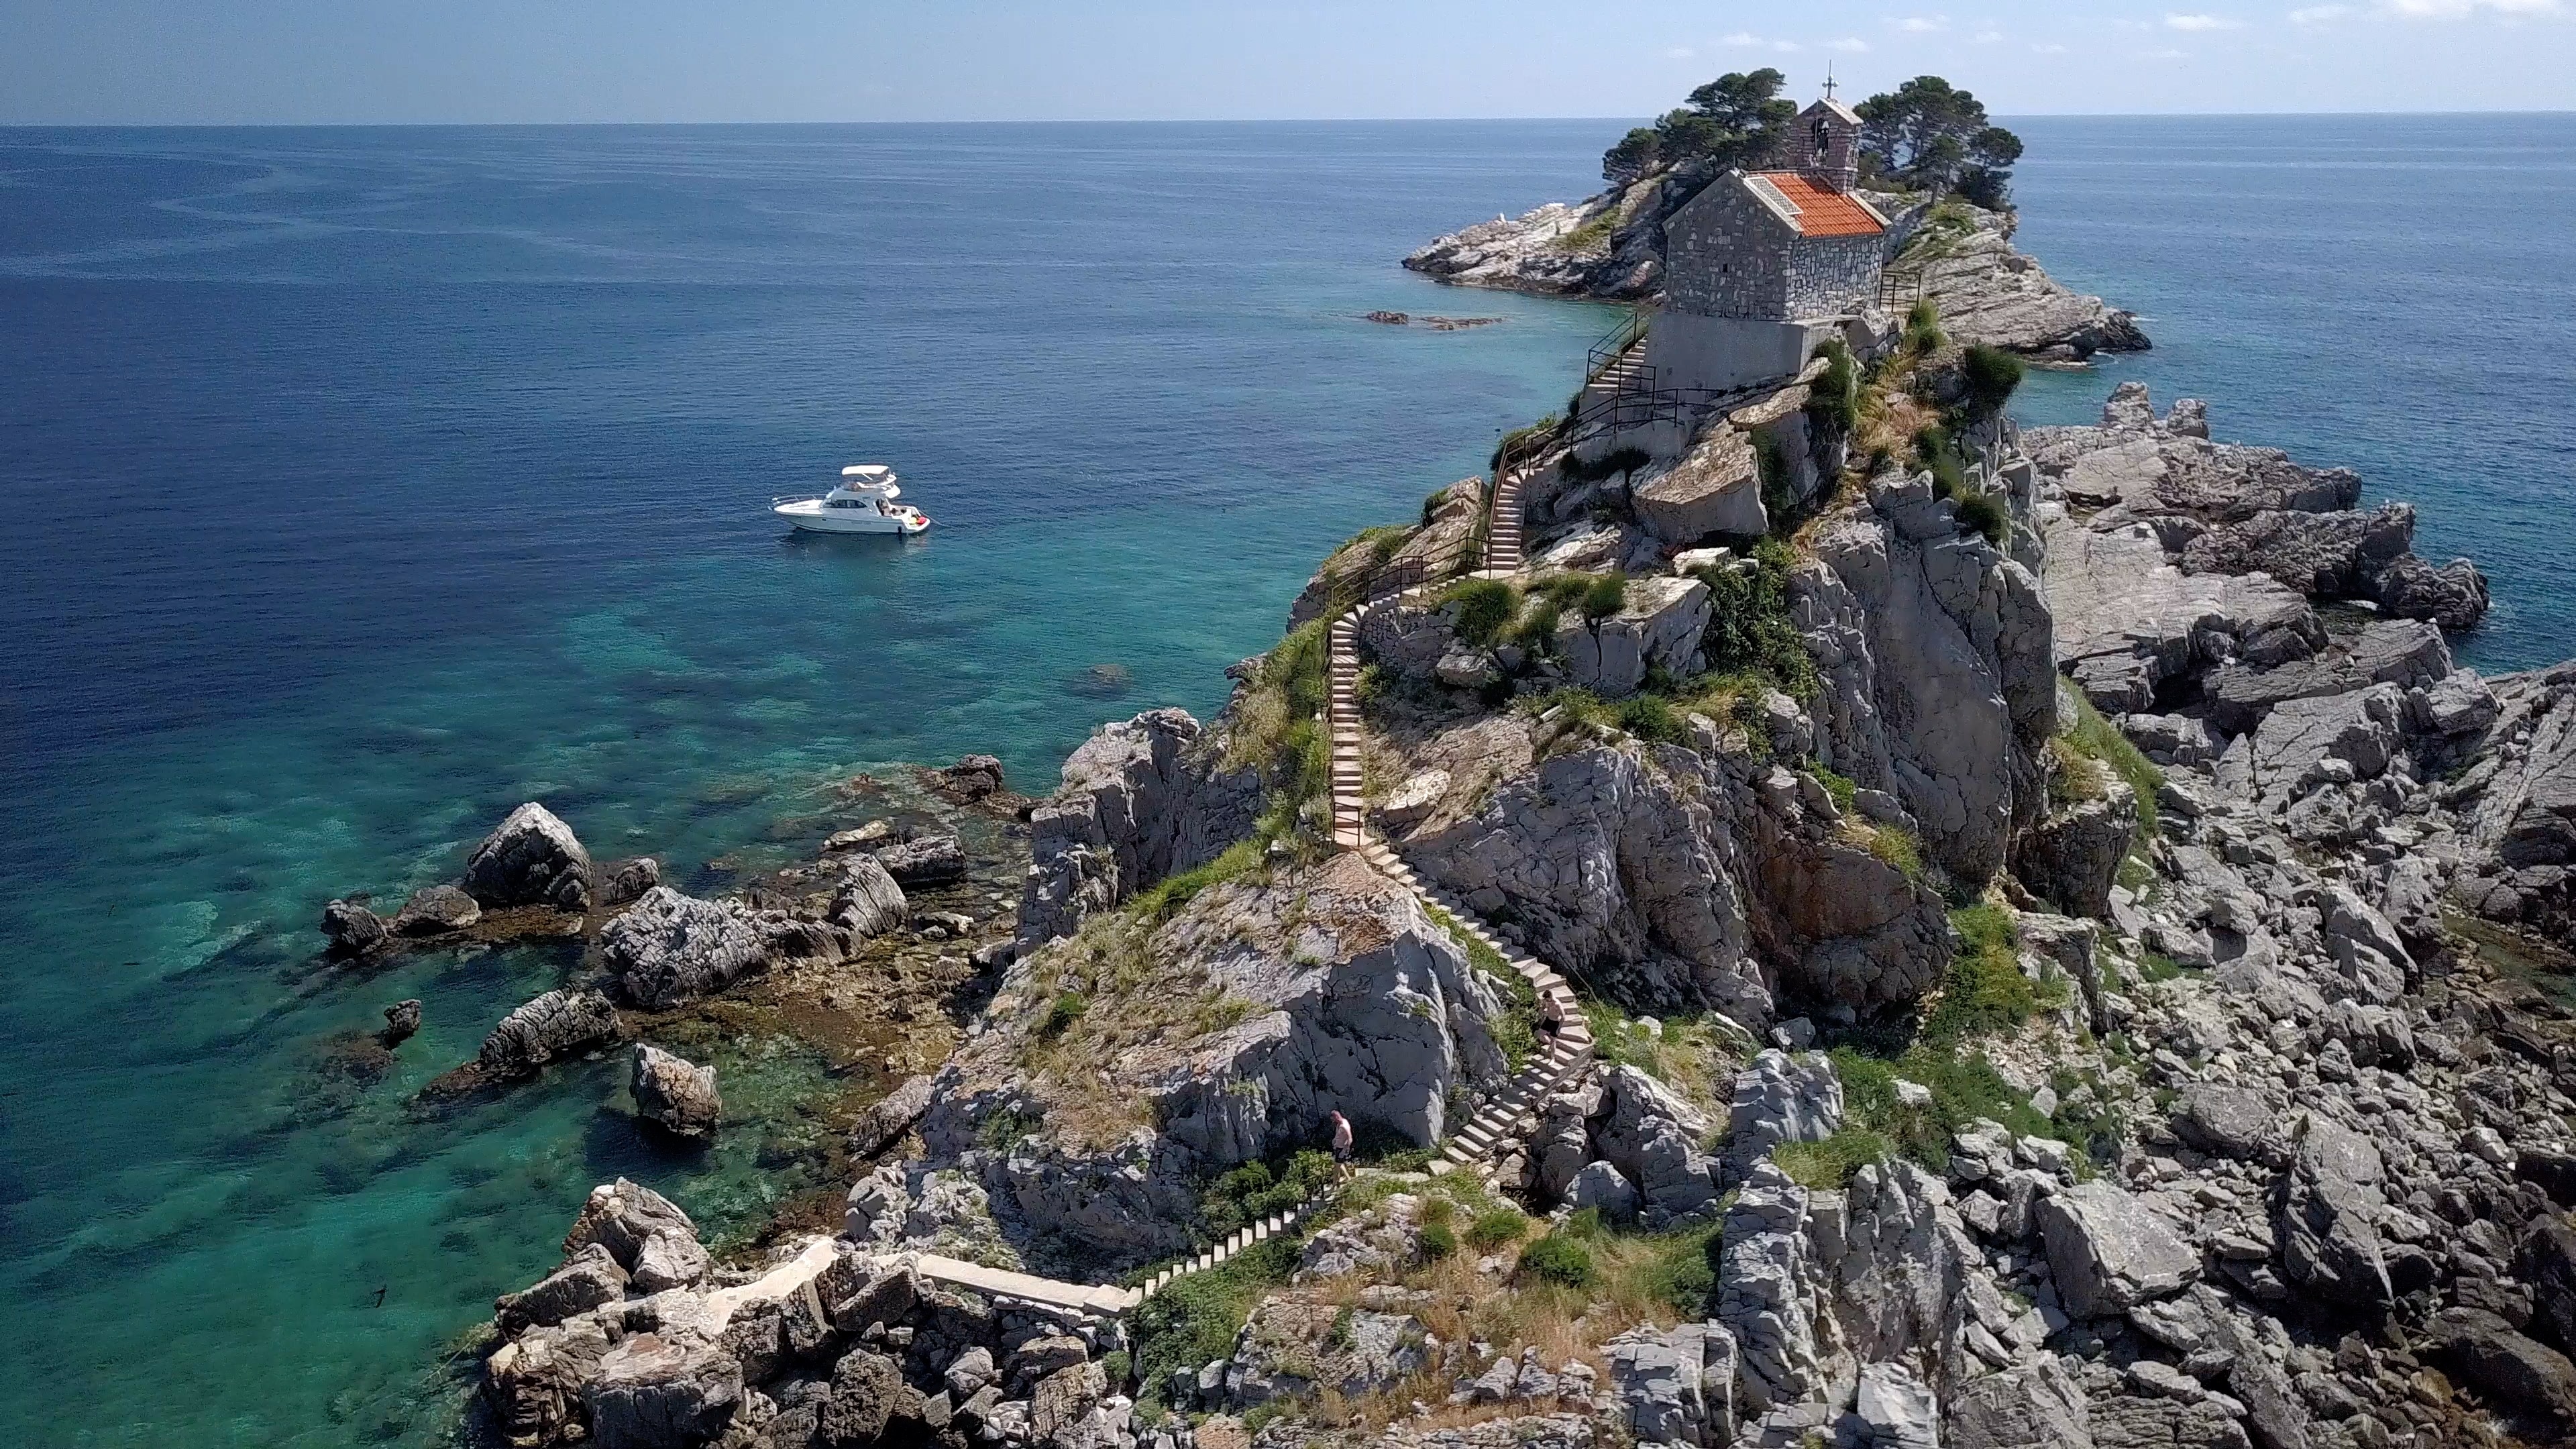 Adriatic Sea, Pro diving Montenegro, Diving site, Vibrant marine life, 3840x2160 4K Desktop